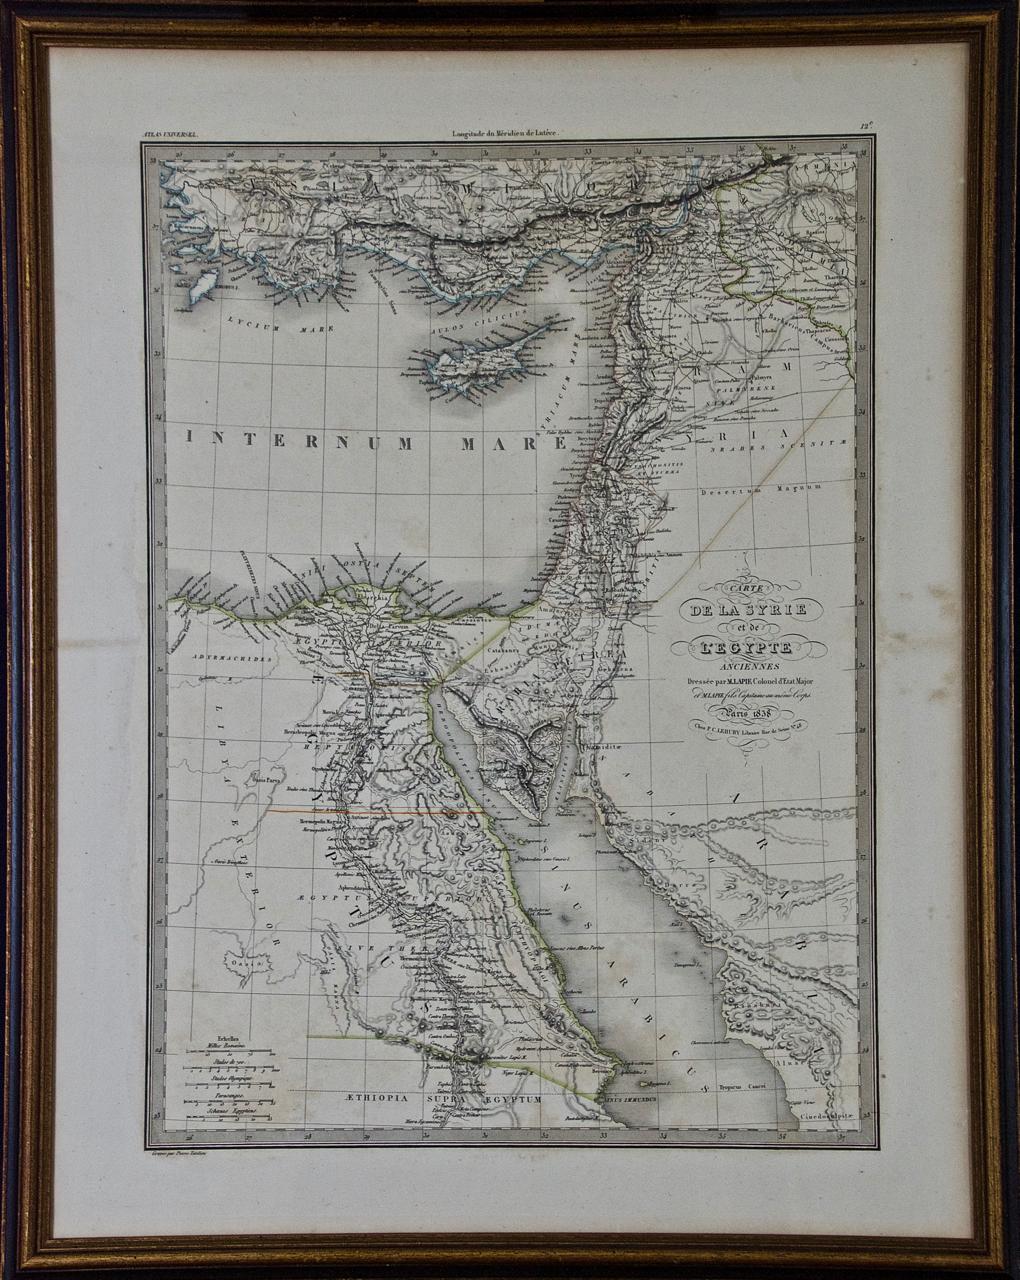 Landscape Print Pierre M. Lapie - Carte de la Terre Sainte "Carte de la Syrie et de l'Égypte" de Pierre Lapie